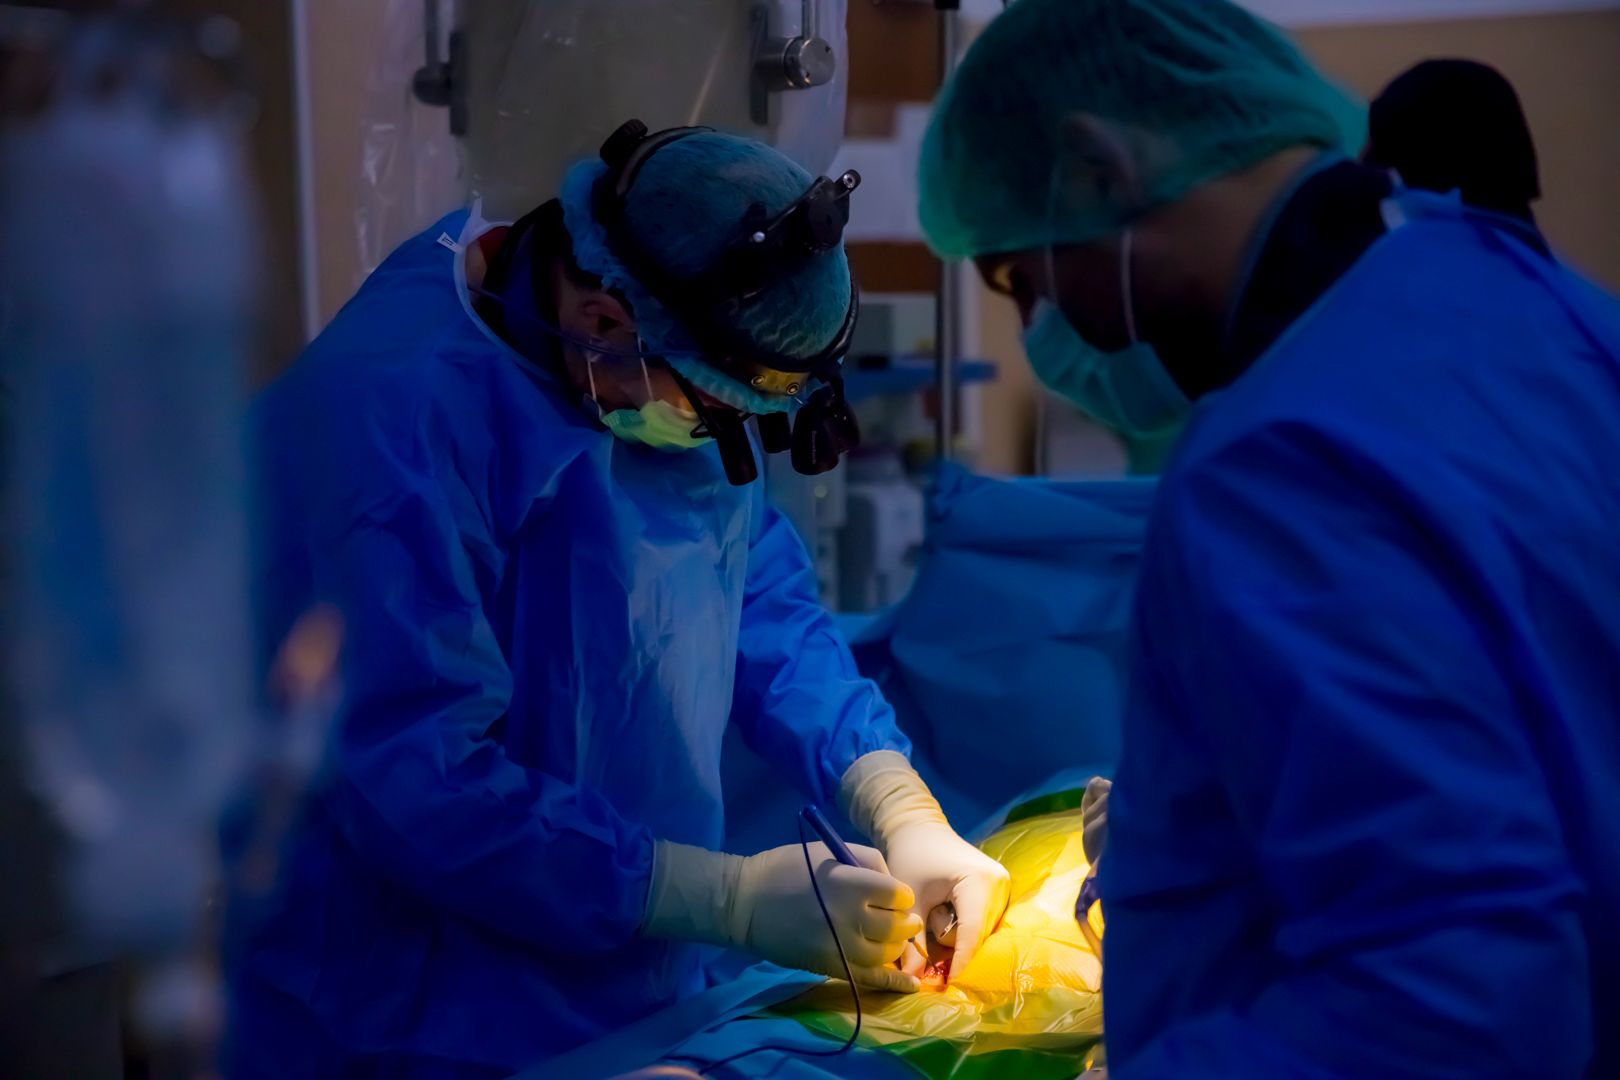 Premieră medicală - Intervenție de implantare de stent aortic la un pacient diagnosticat cu Coarctație de aortă